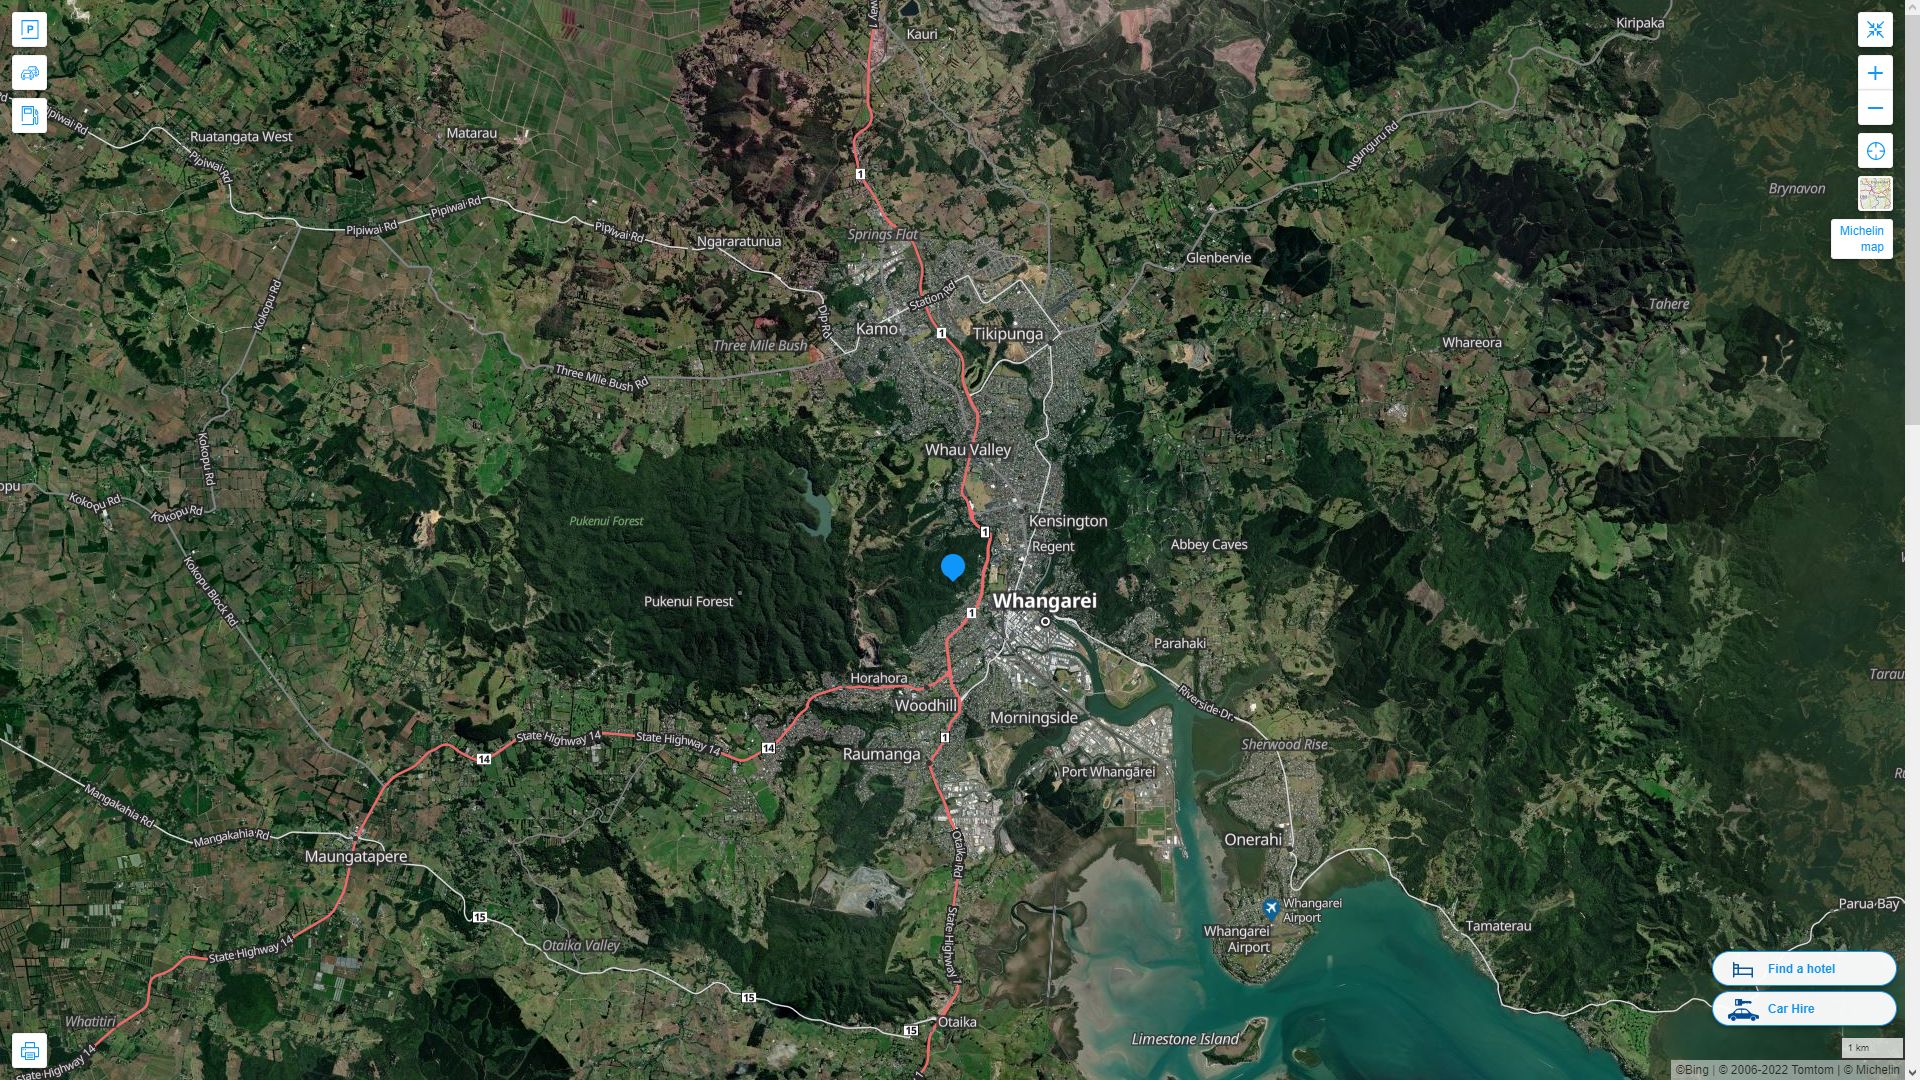 Whangarei Nouvelle Zelande Autoroute et carte routiere avec vue satellite